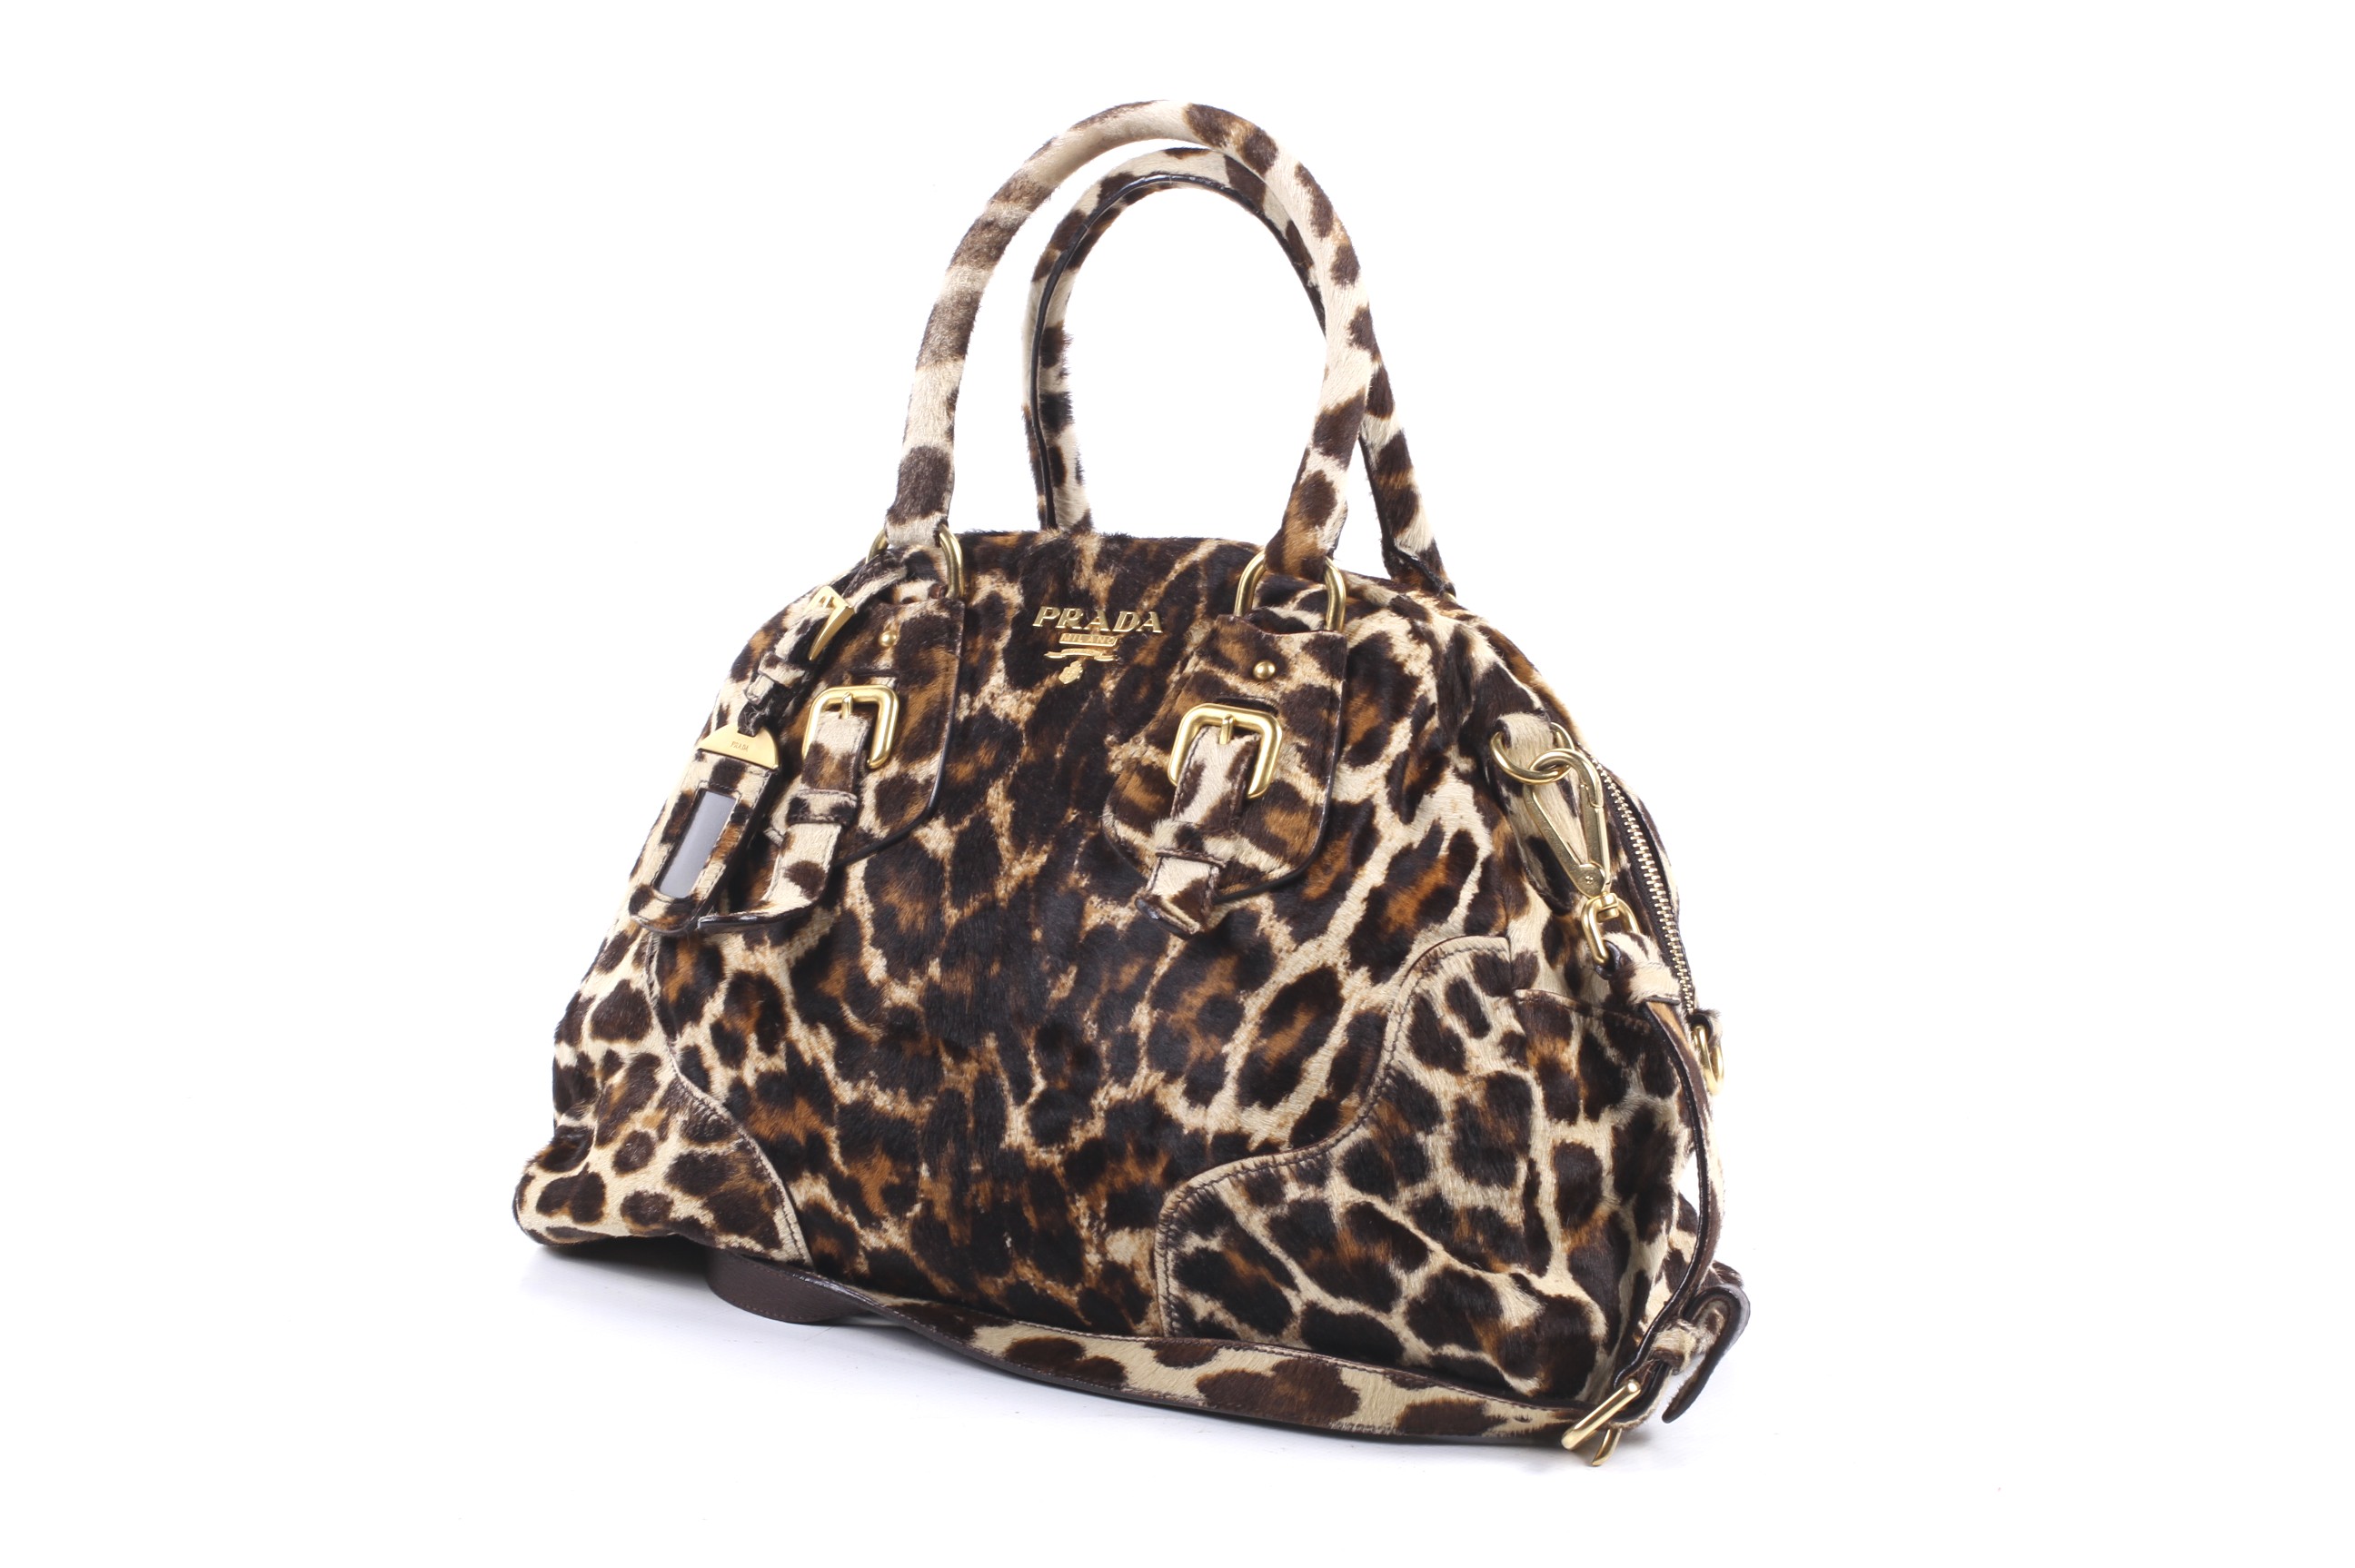 A Prada calf hair leopard print handbag. Made in Italy, circa 2000. - Image 3 of 5